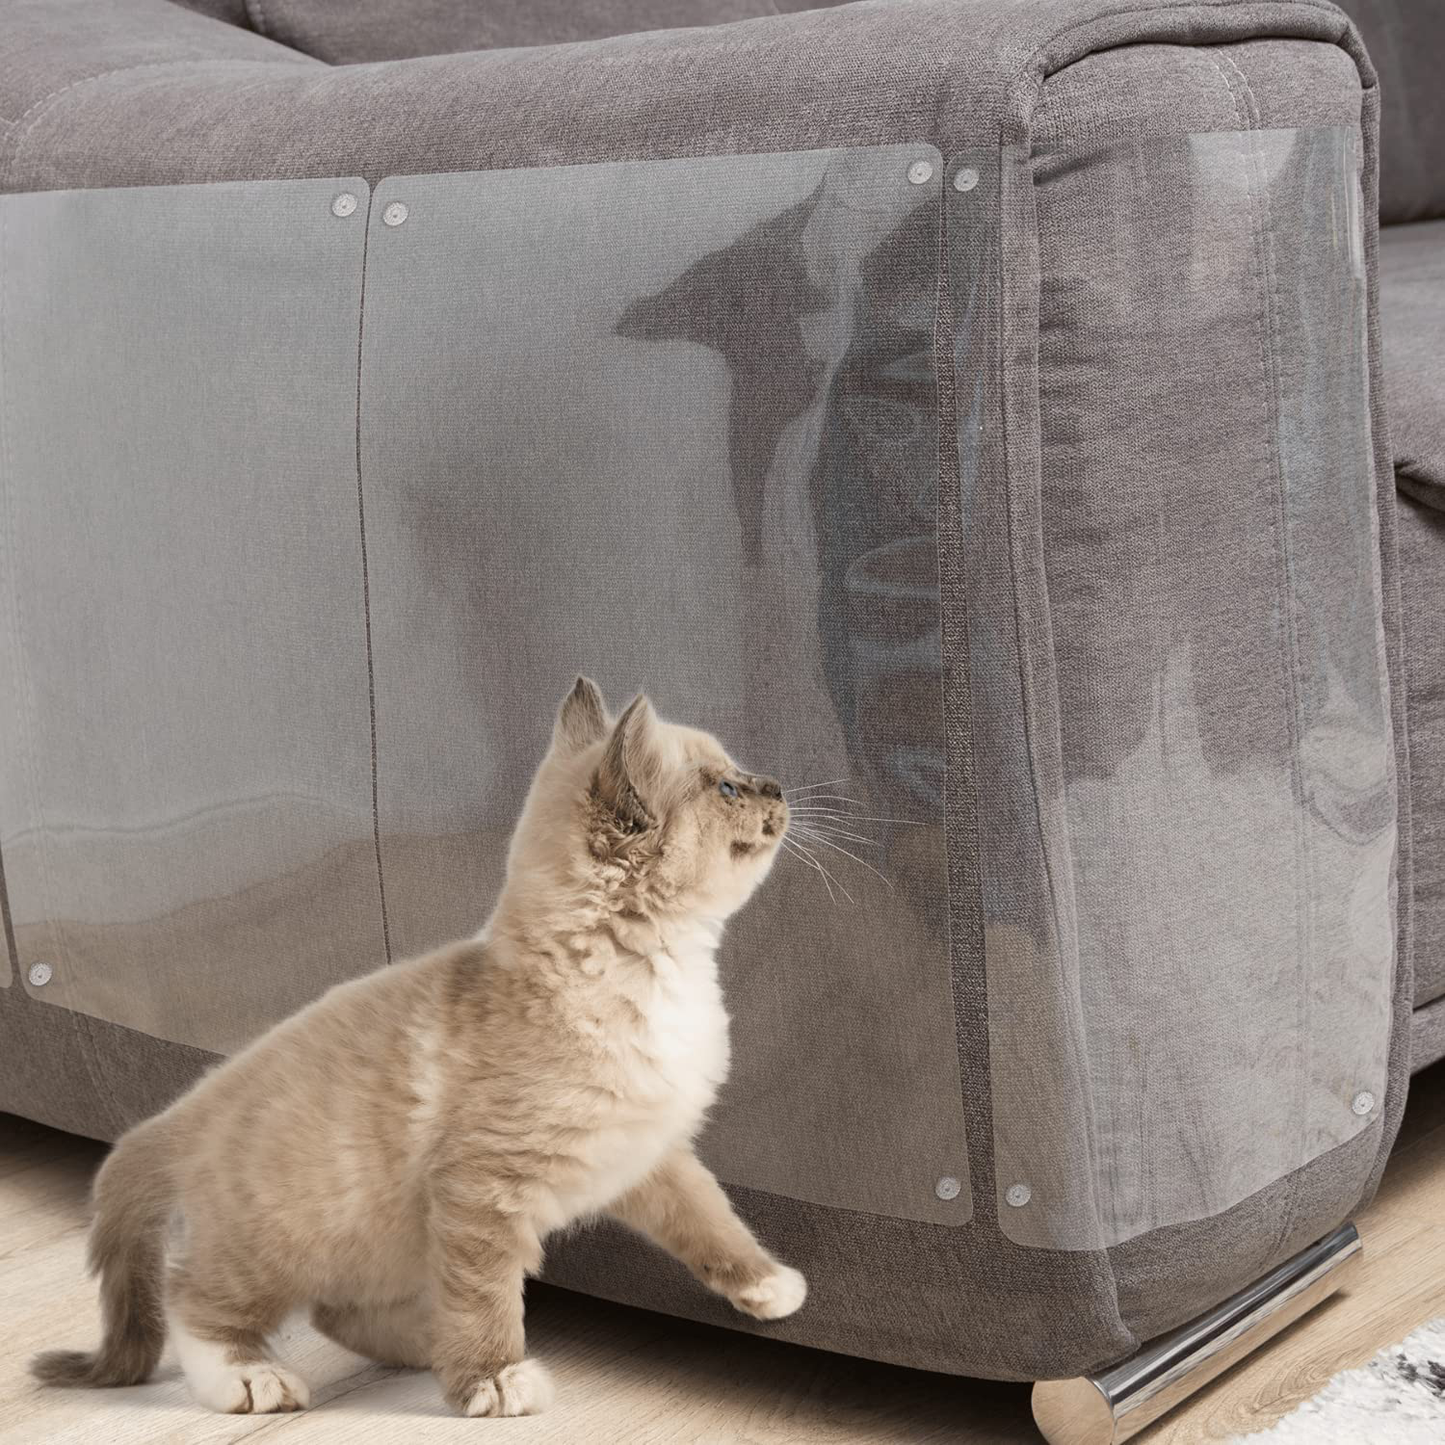 Cat Furniture Protector - 10 Pack - anti Cat Scratch Furniture Protector, Furniture Protectors from Cats, Cat Scratch Deterrent, Cat Couch Guard Protector, Couch Corner Protectors for Cats Scratching